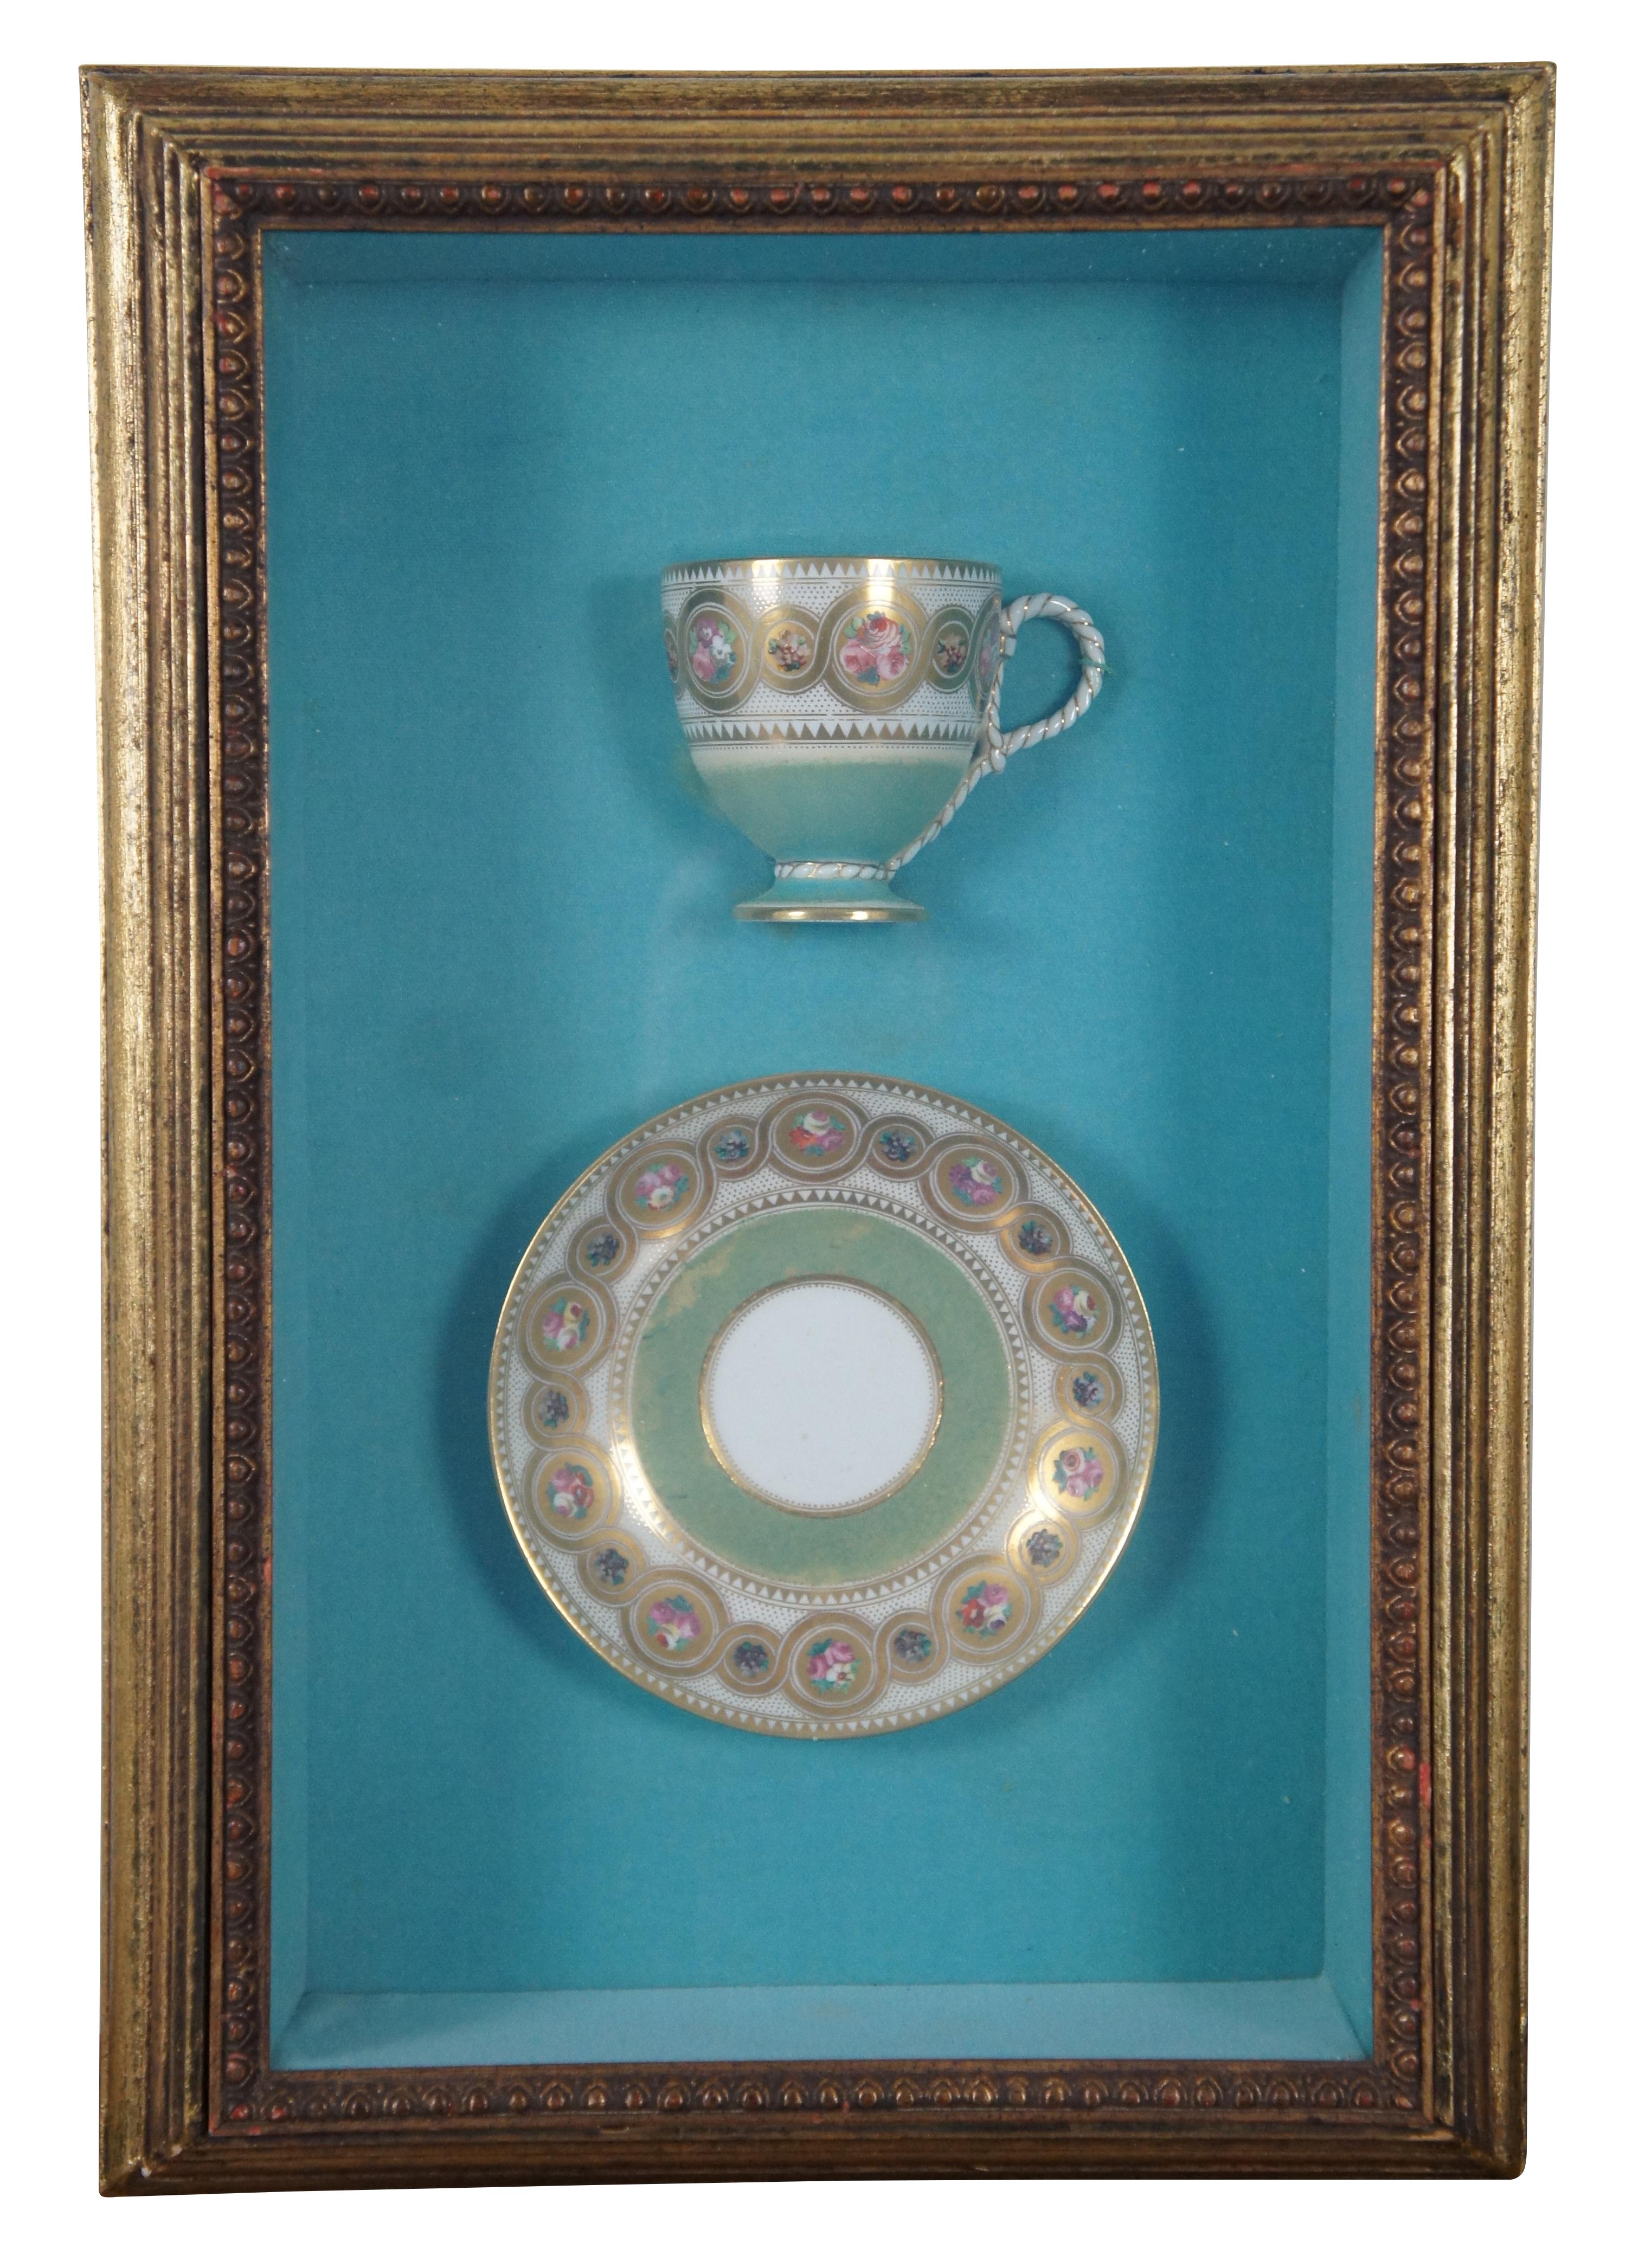 Rare tasse à thé / soucoupe et plat de service en porcelaine anglaise / britannique de l'époque victorienne, peints en turquoise, or et cerclés de motifs de fleurs et de rubans. Montés dans des boîtes à ombre au cadre biseauté profond, avec des